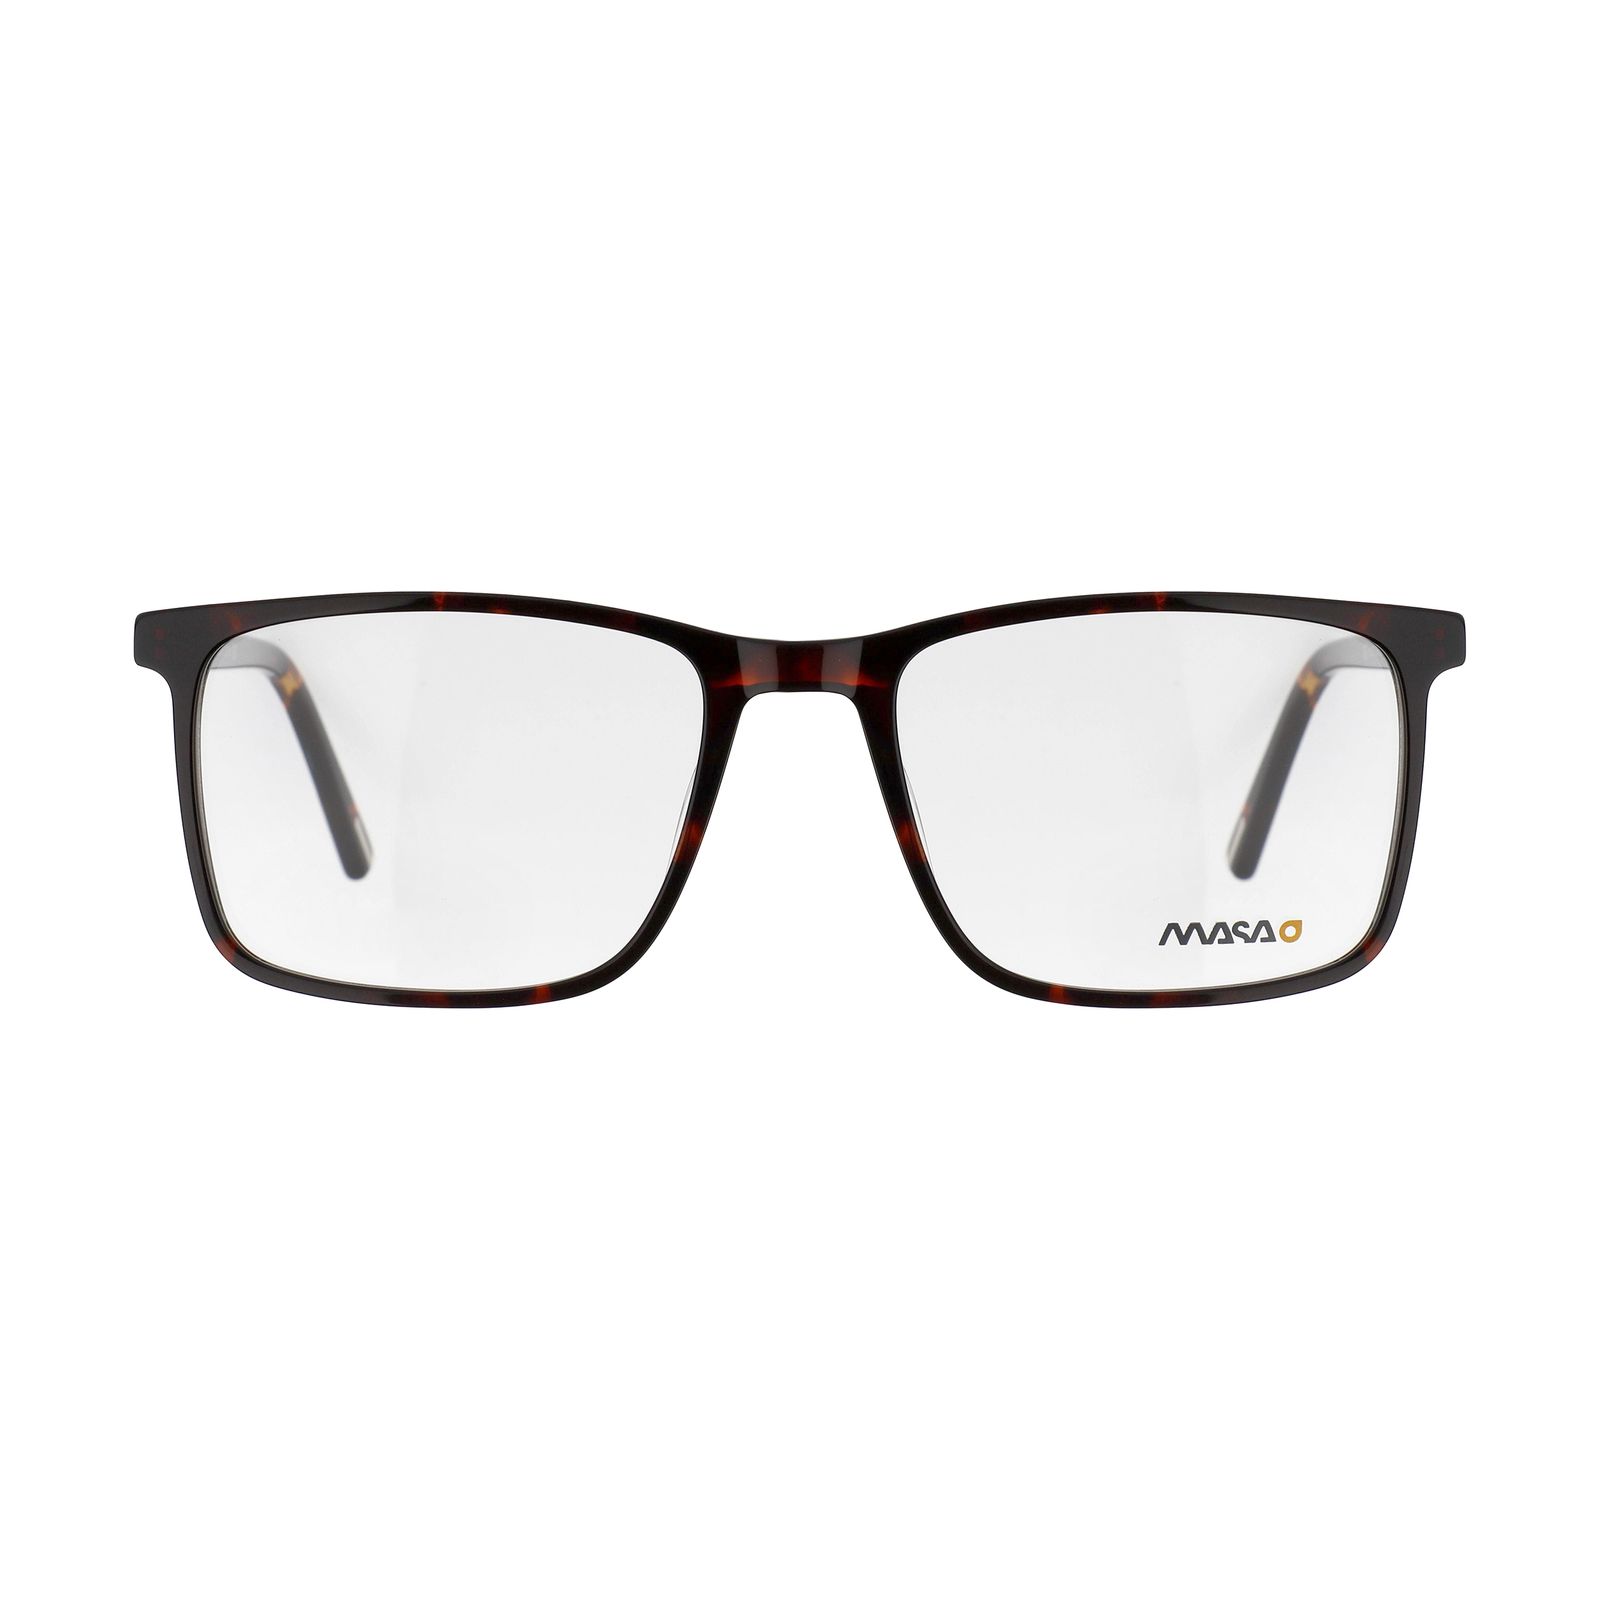 فریم عینک طبی ماسائو مدل 13185-609